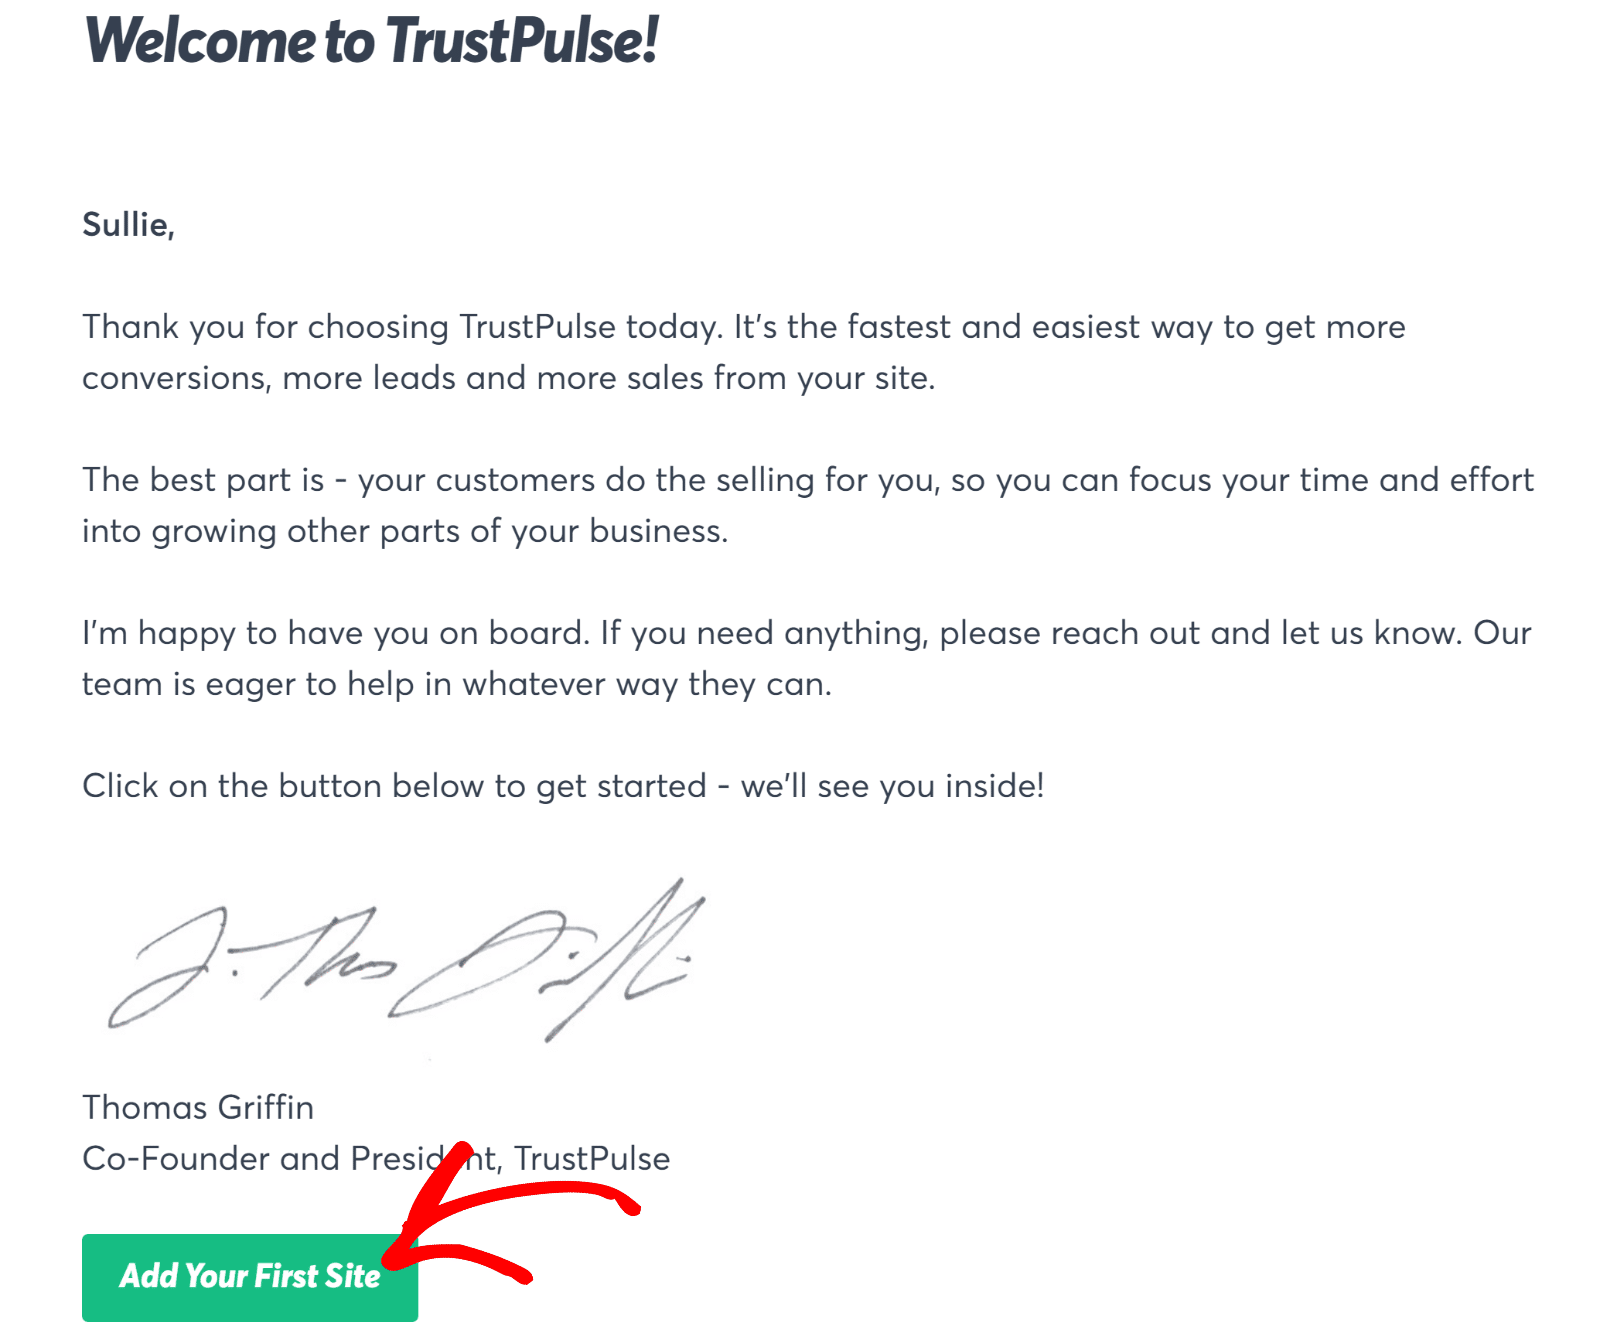 Add first site in TrustPulse